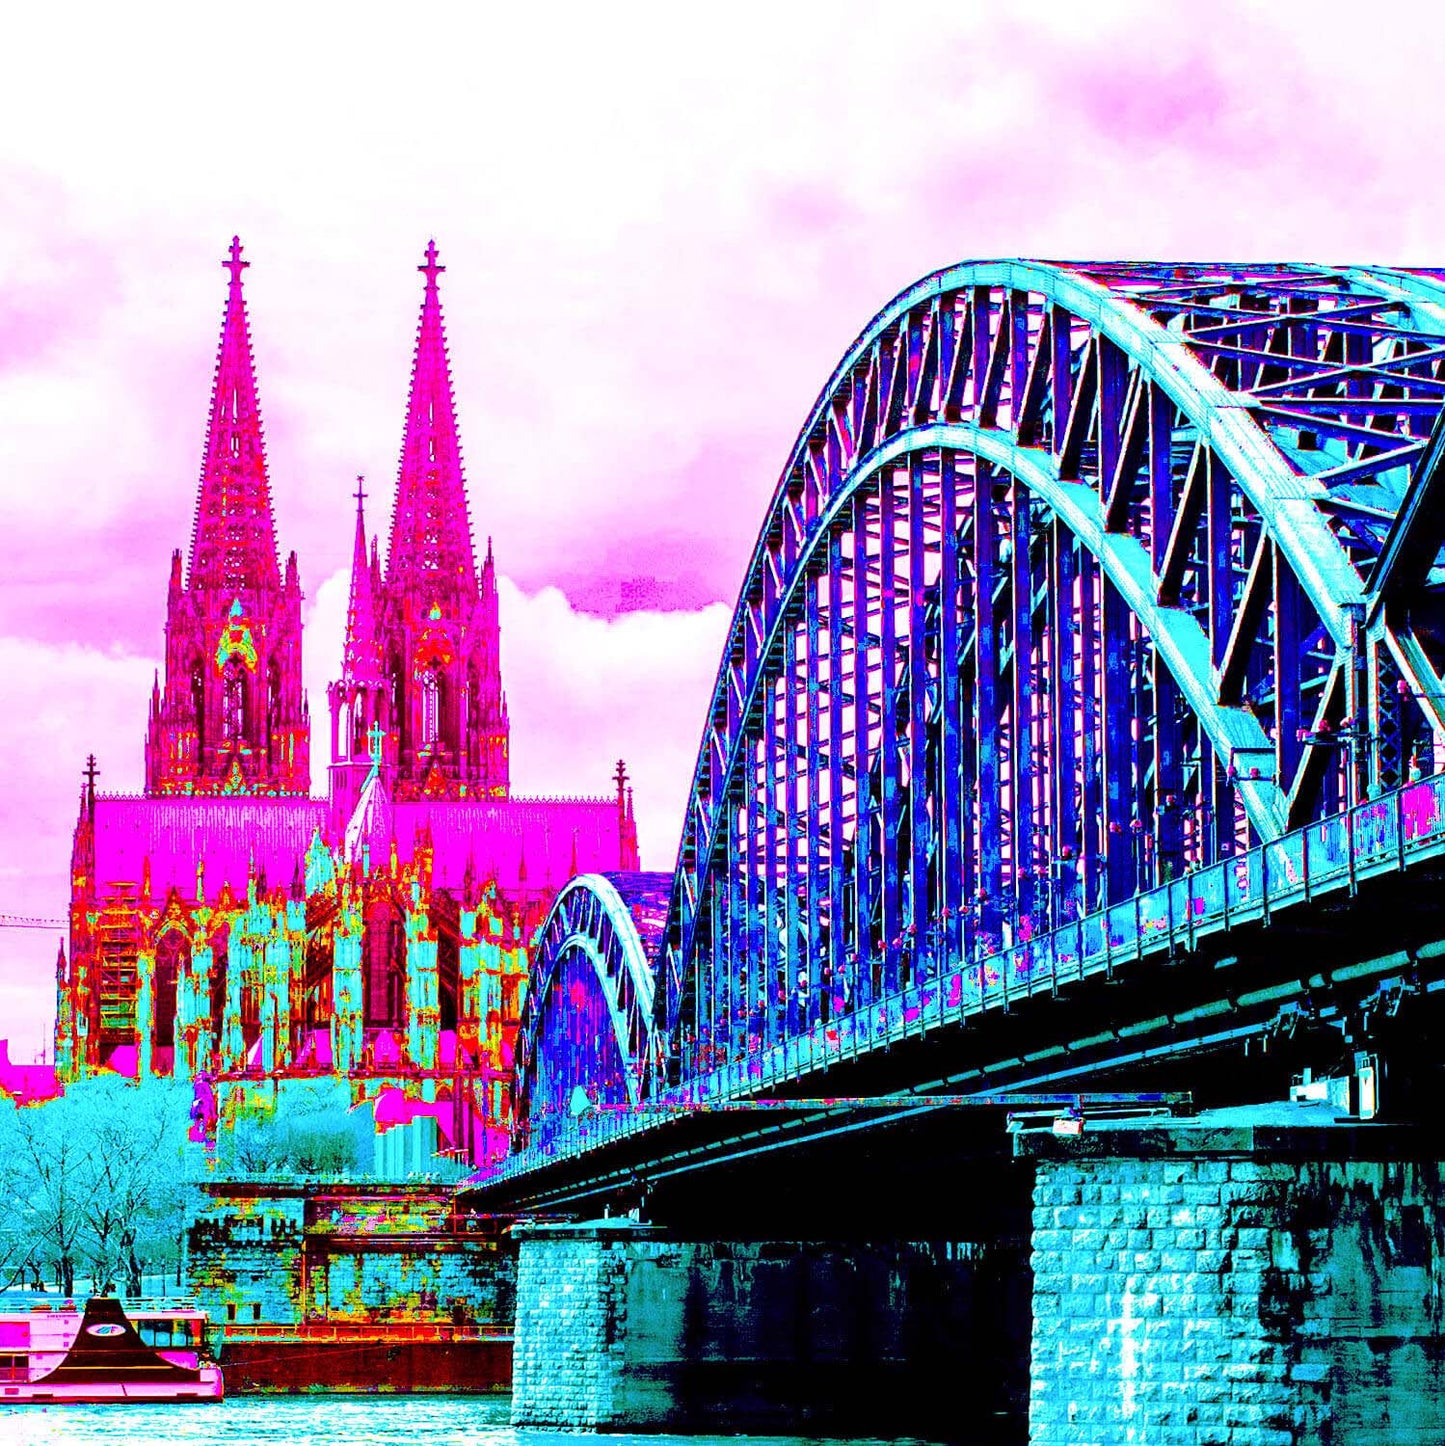 Popart-Bild von Köln. Rechts ist die in blau und türkis gefärbte Hohenzollernbrücke zu sehen. Links sticht der Kölner Dom in Pink mit Türkisen Akzenten hervor.